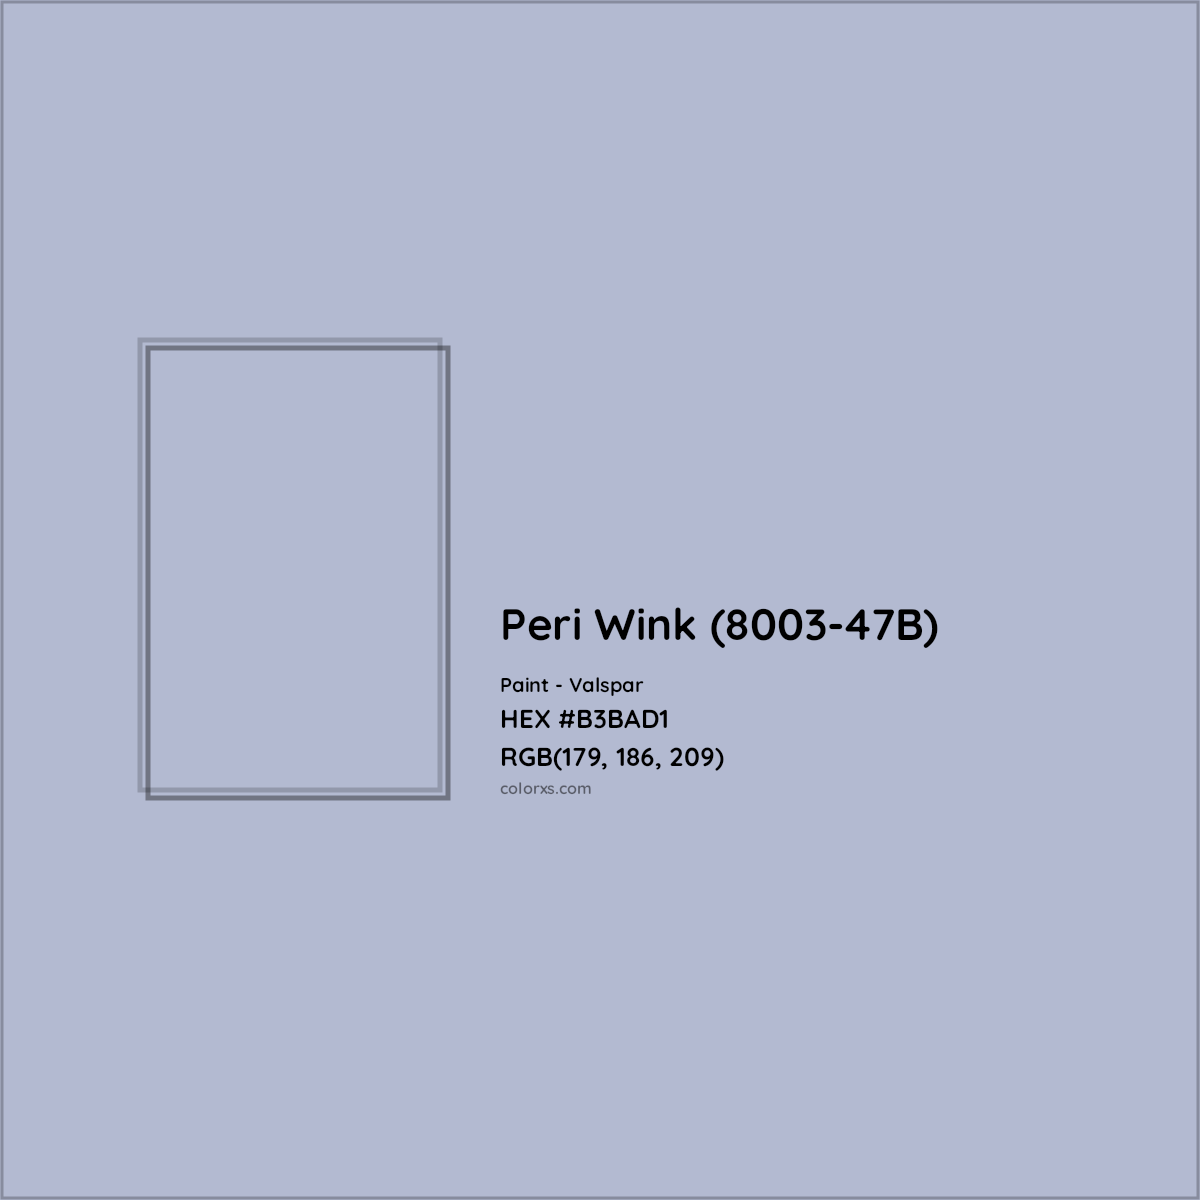 HEX #B3BAD1 Peri Wink (8003-47B) Paint Valspar - Color Code